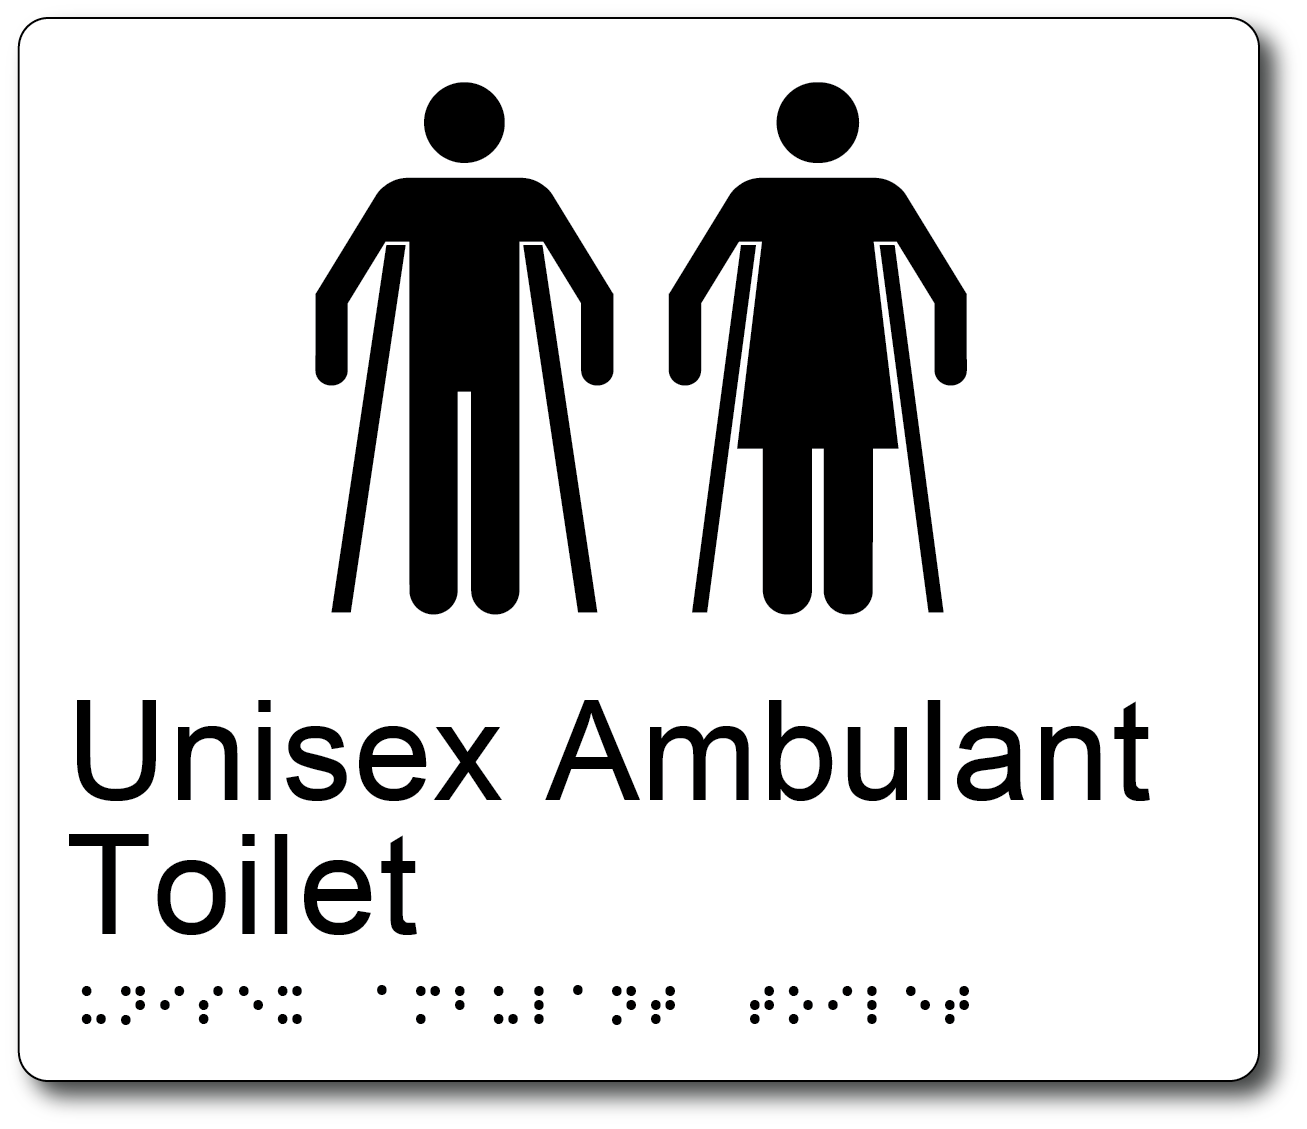 Unisex Ambulant Toilet